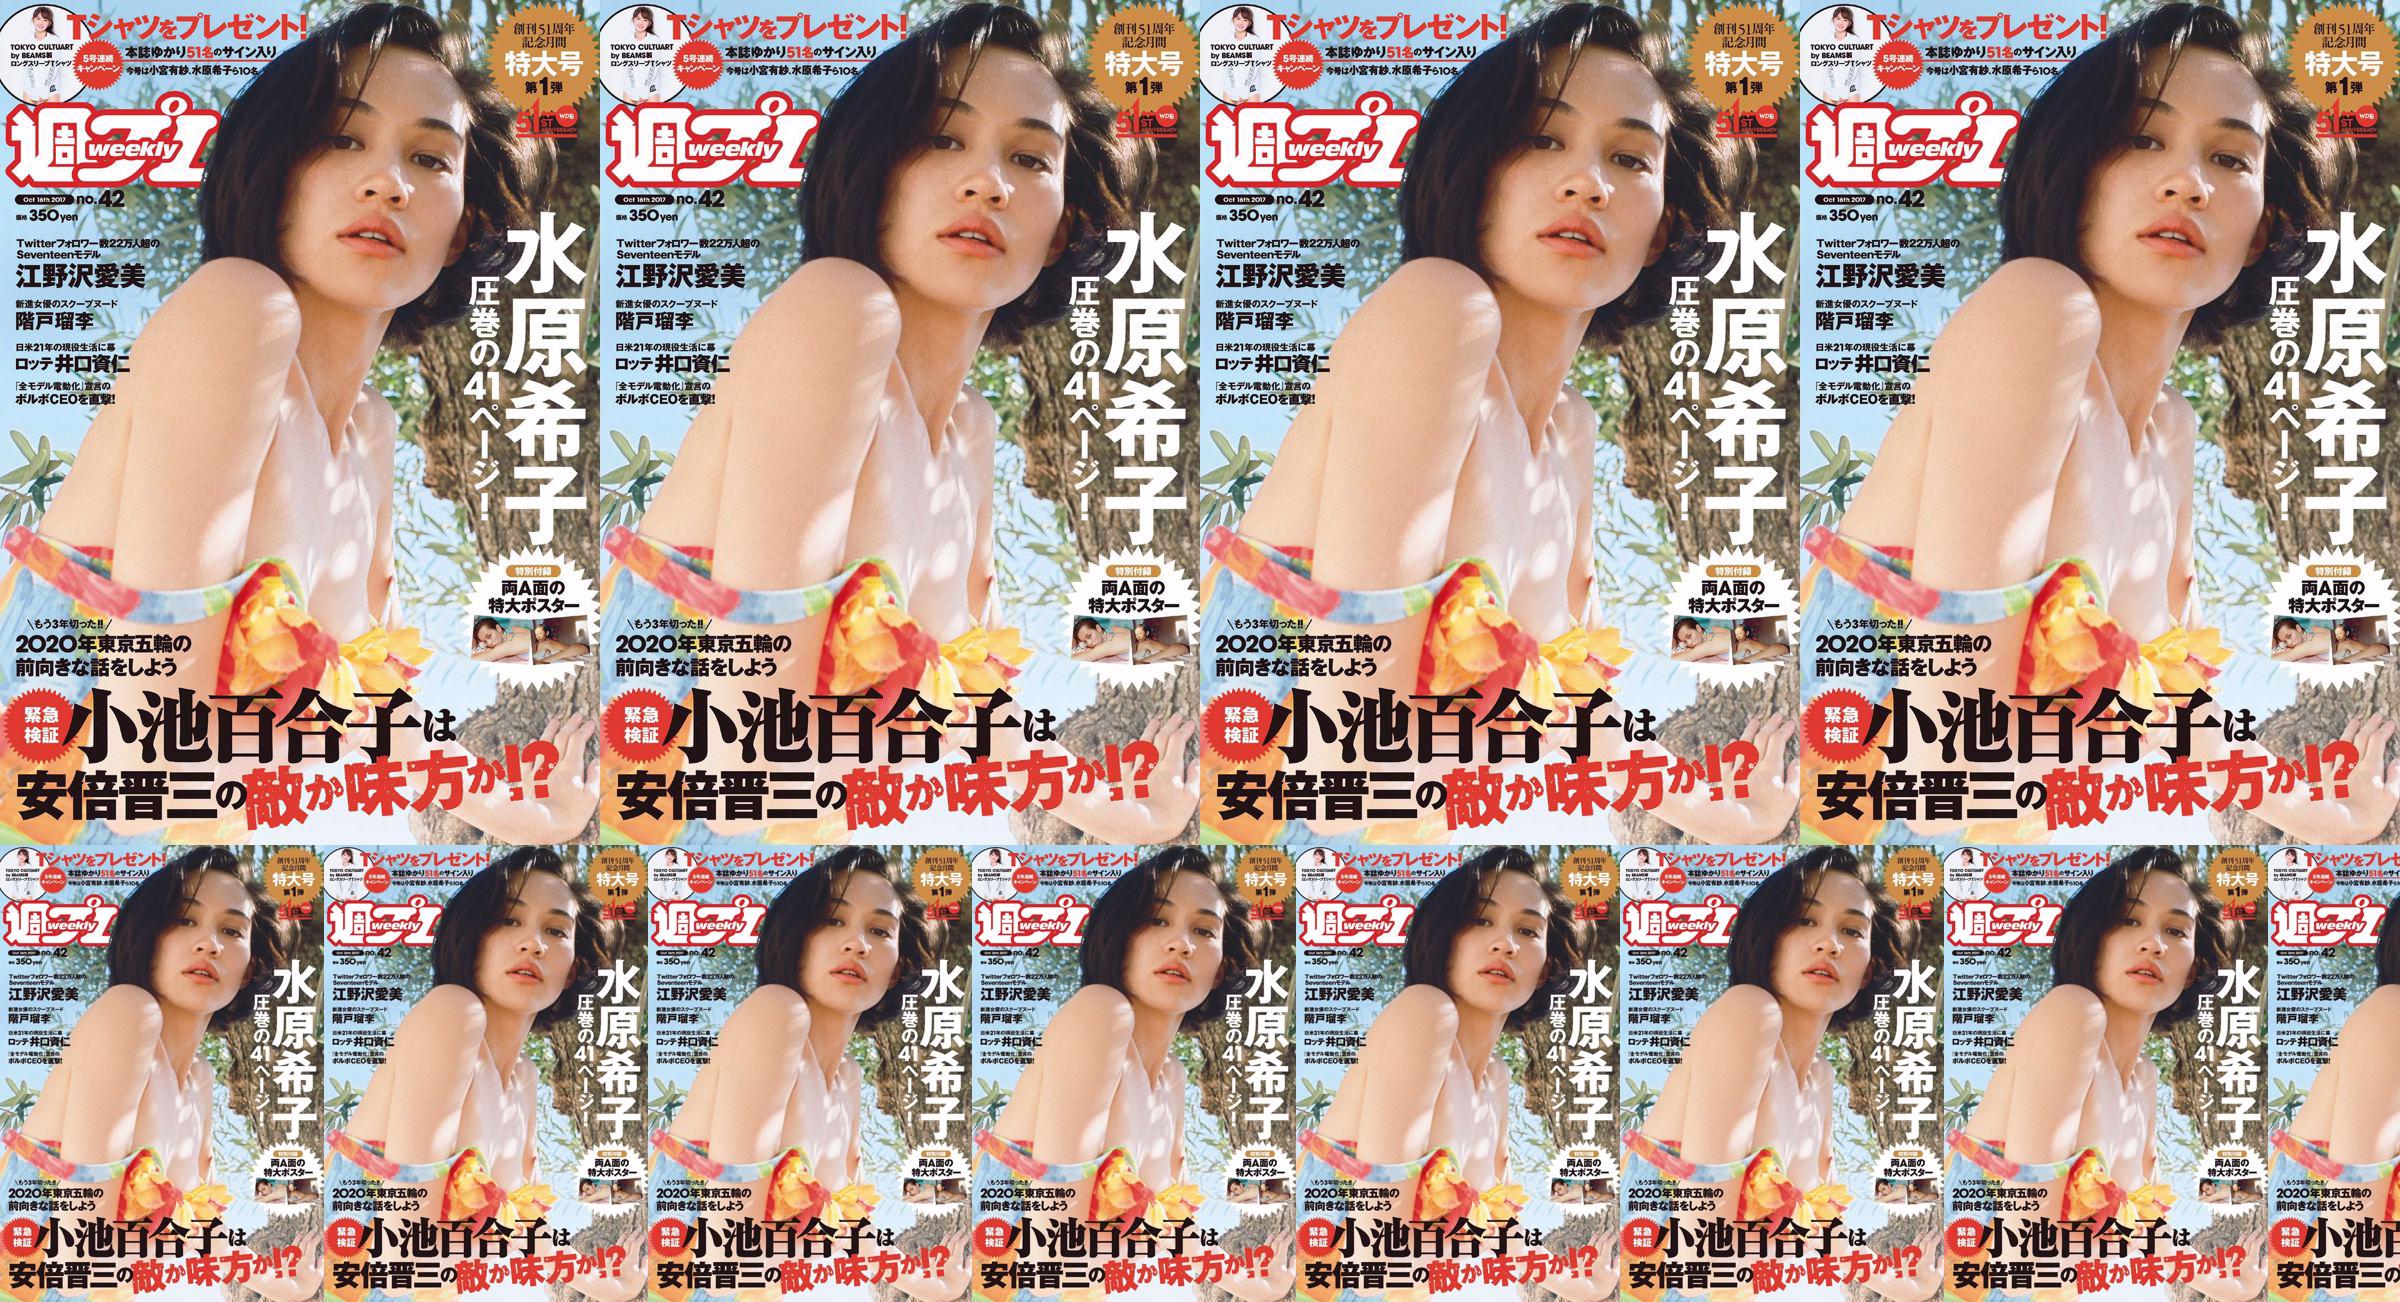 Kiko Mizuhara Manami Enosawa Serina Fukui Miu Nakamura Ruri Shinato [Wöchentlicher Playboy] 2017 Nr. 42 Fotomagazin No.d13088 Seite 1